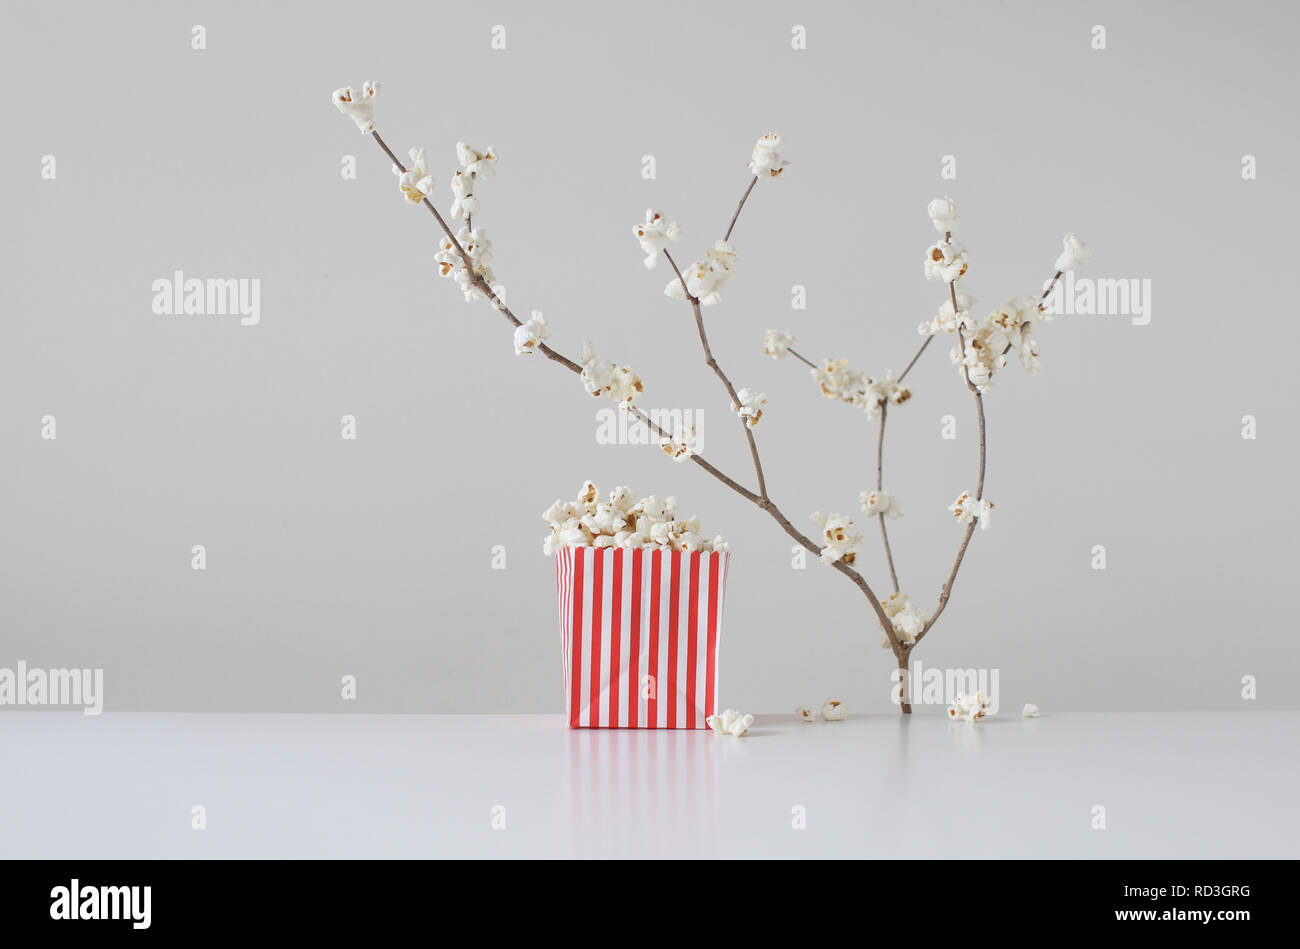 Fiori di ciliegio concettuali che crescono su un albero accanto a un sacchetto di popcorn Foto Stock